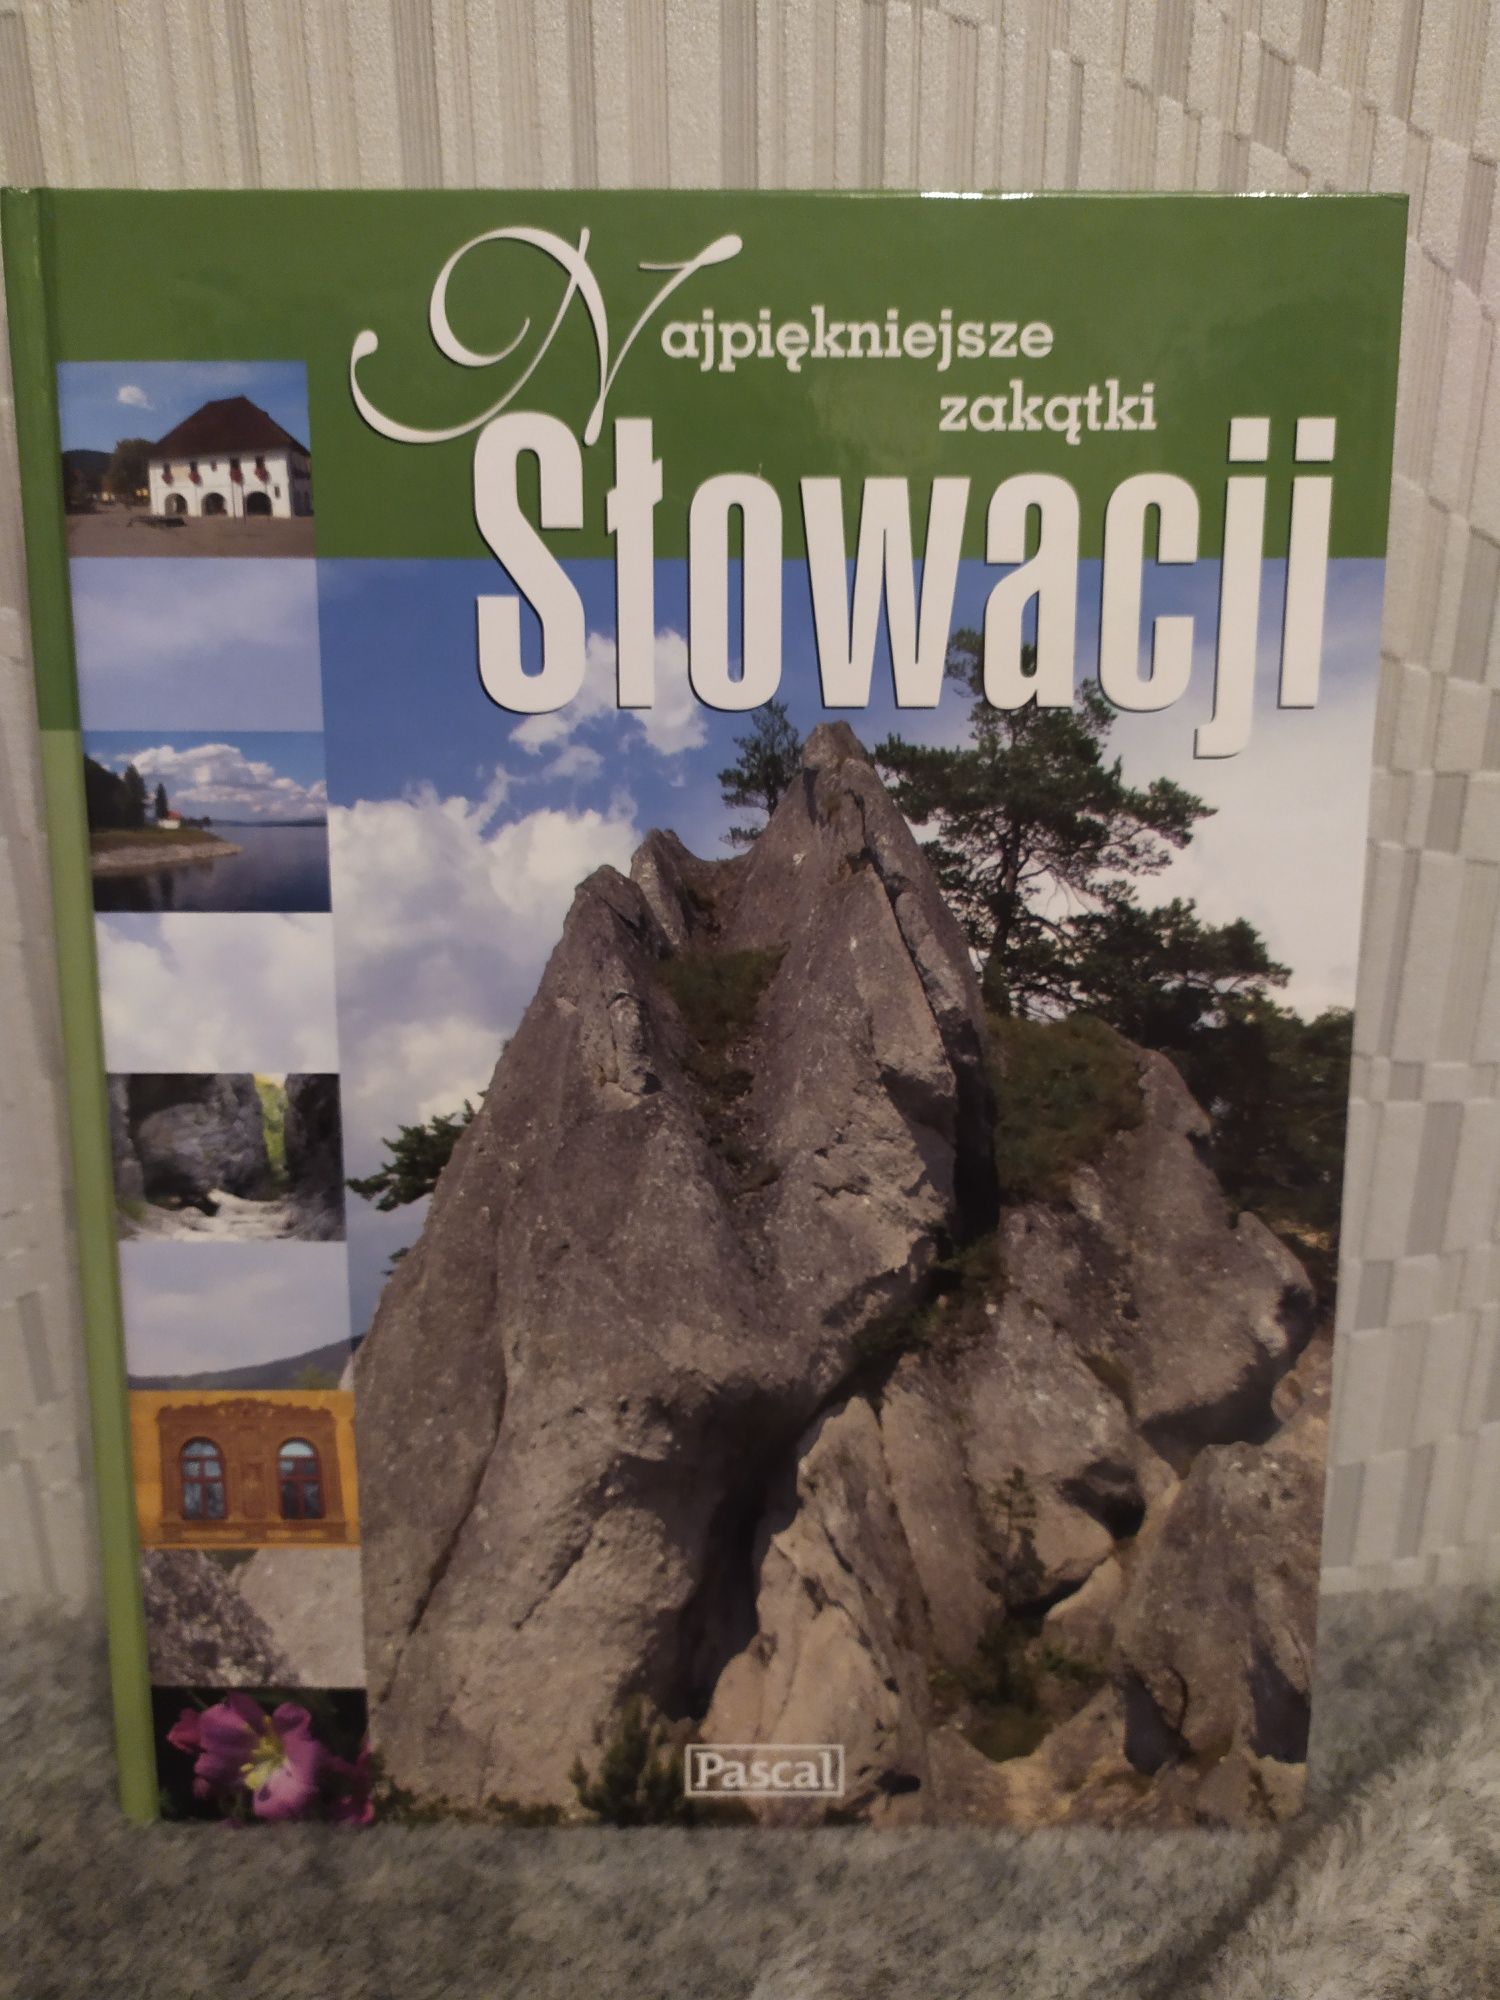 Najpiękniejsze zakątki Słowacji